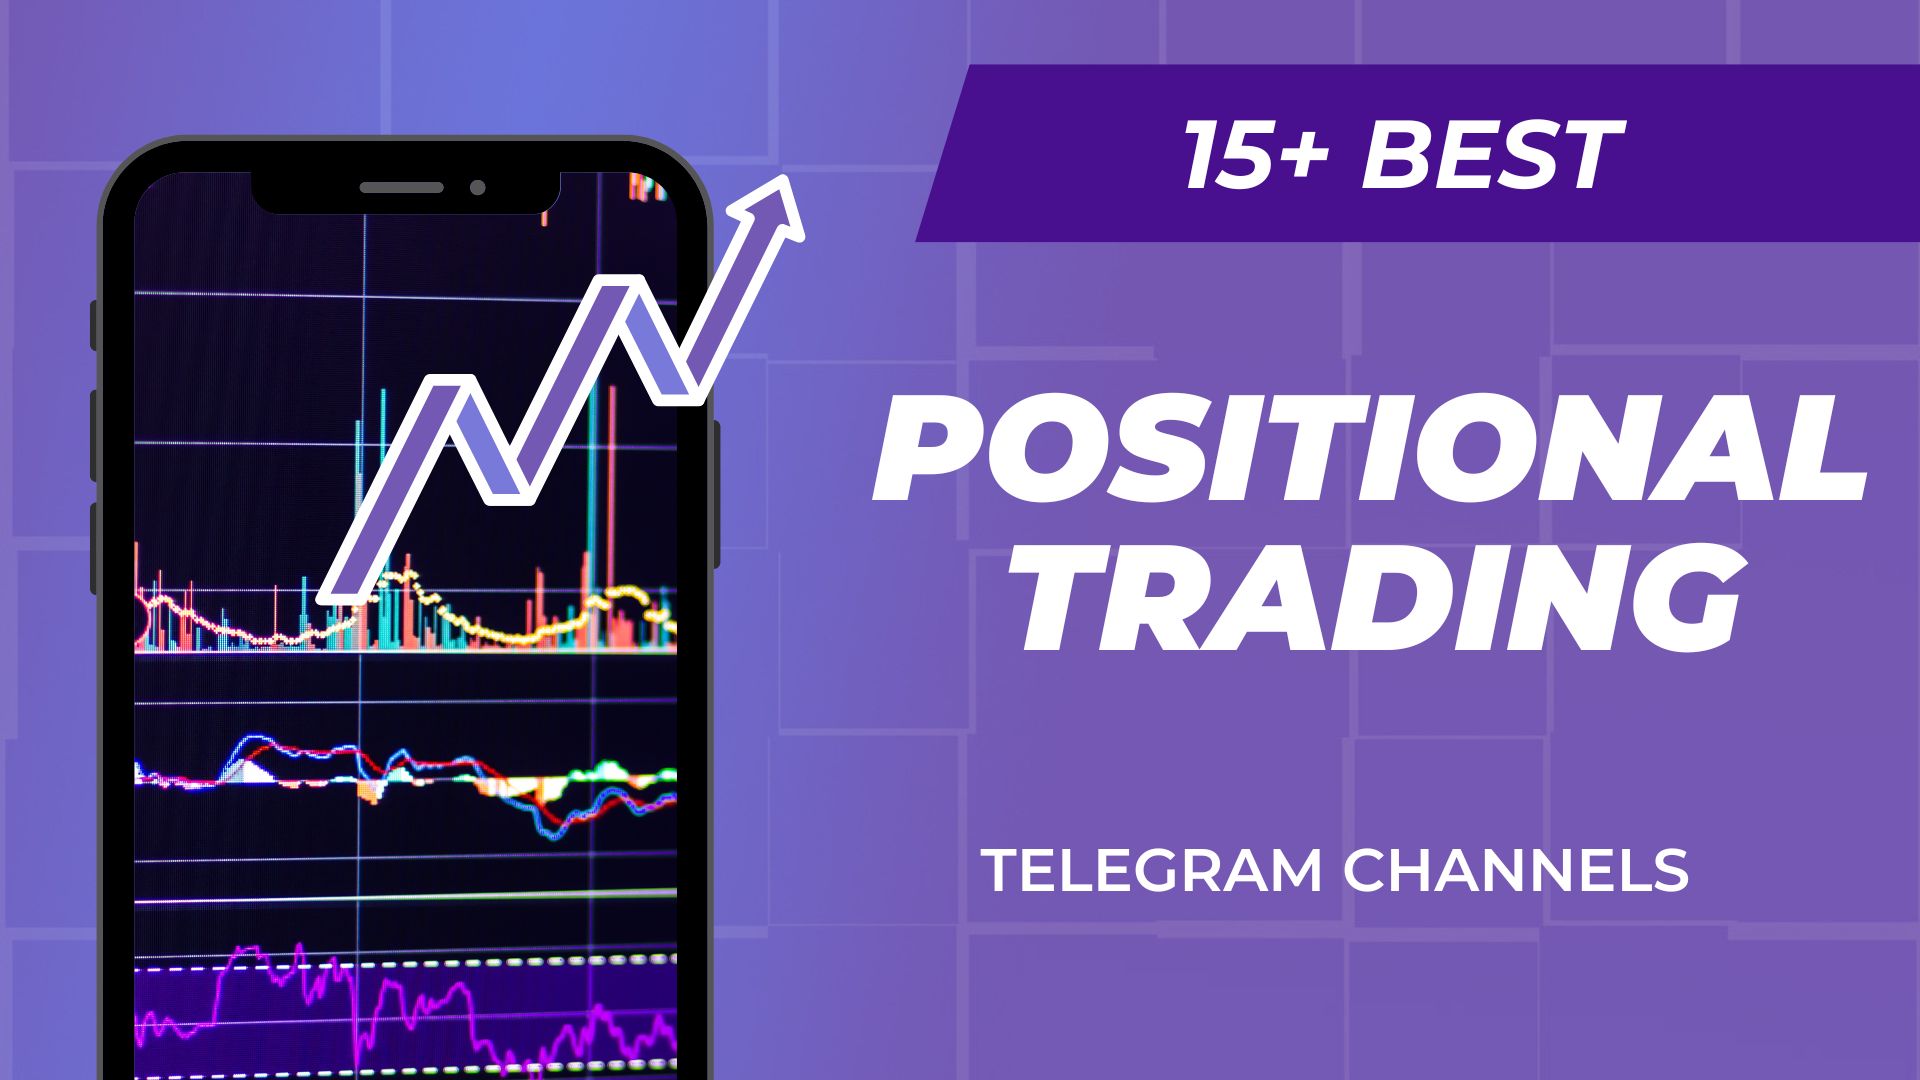 telegram-channels-for-positional-trading